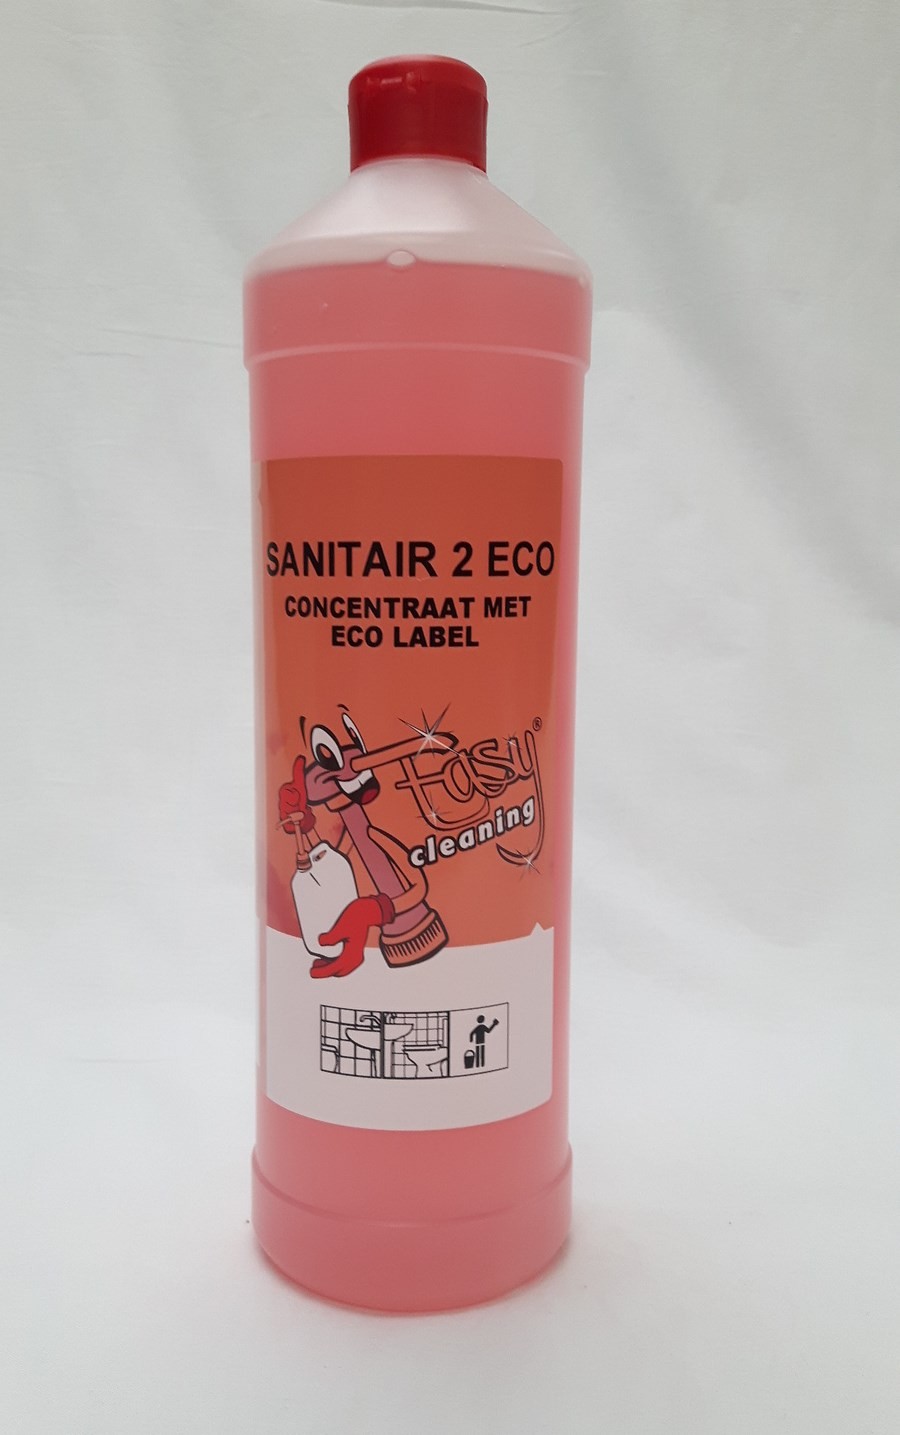 Easy Cleaning Nr. 2 Sanitair concentraat 1 liter